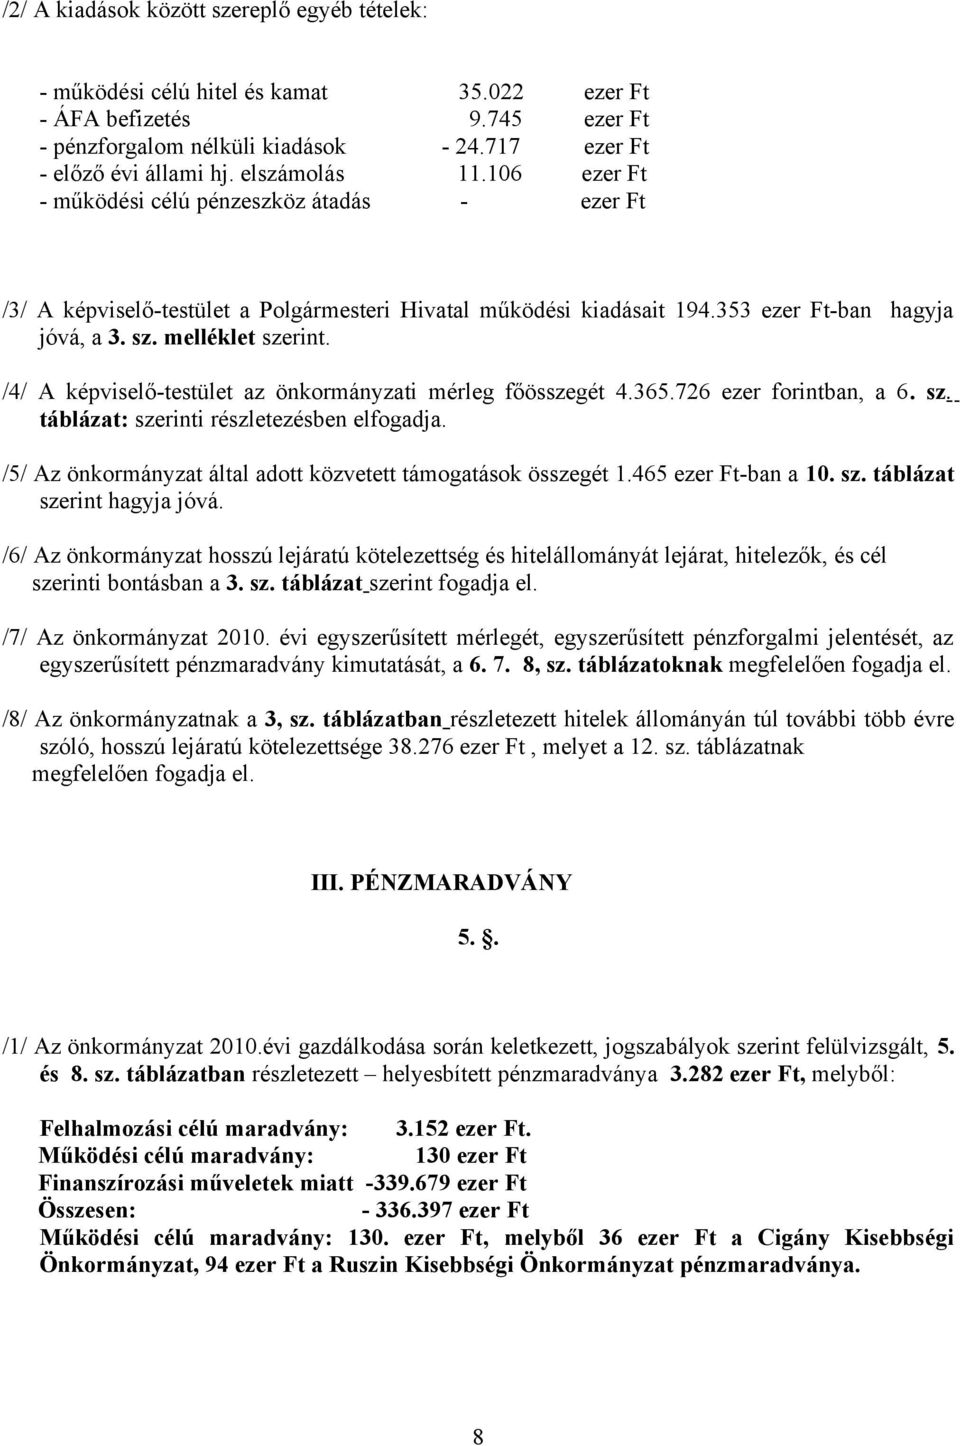 /4/ A képviselő-testület az önkormányzati mérleg főösszegét 4.365.726 ezer forintban, a 6. sz. táblázat: szerinti részletezésben elfogadja.